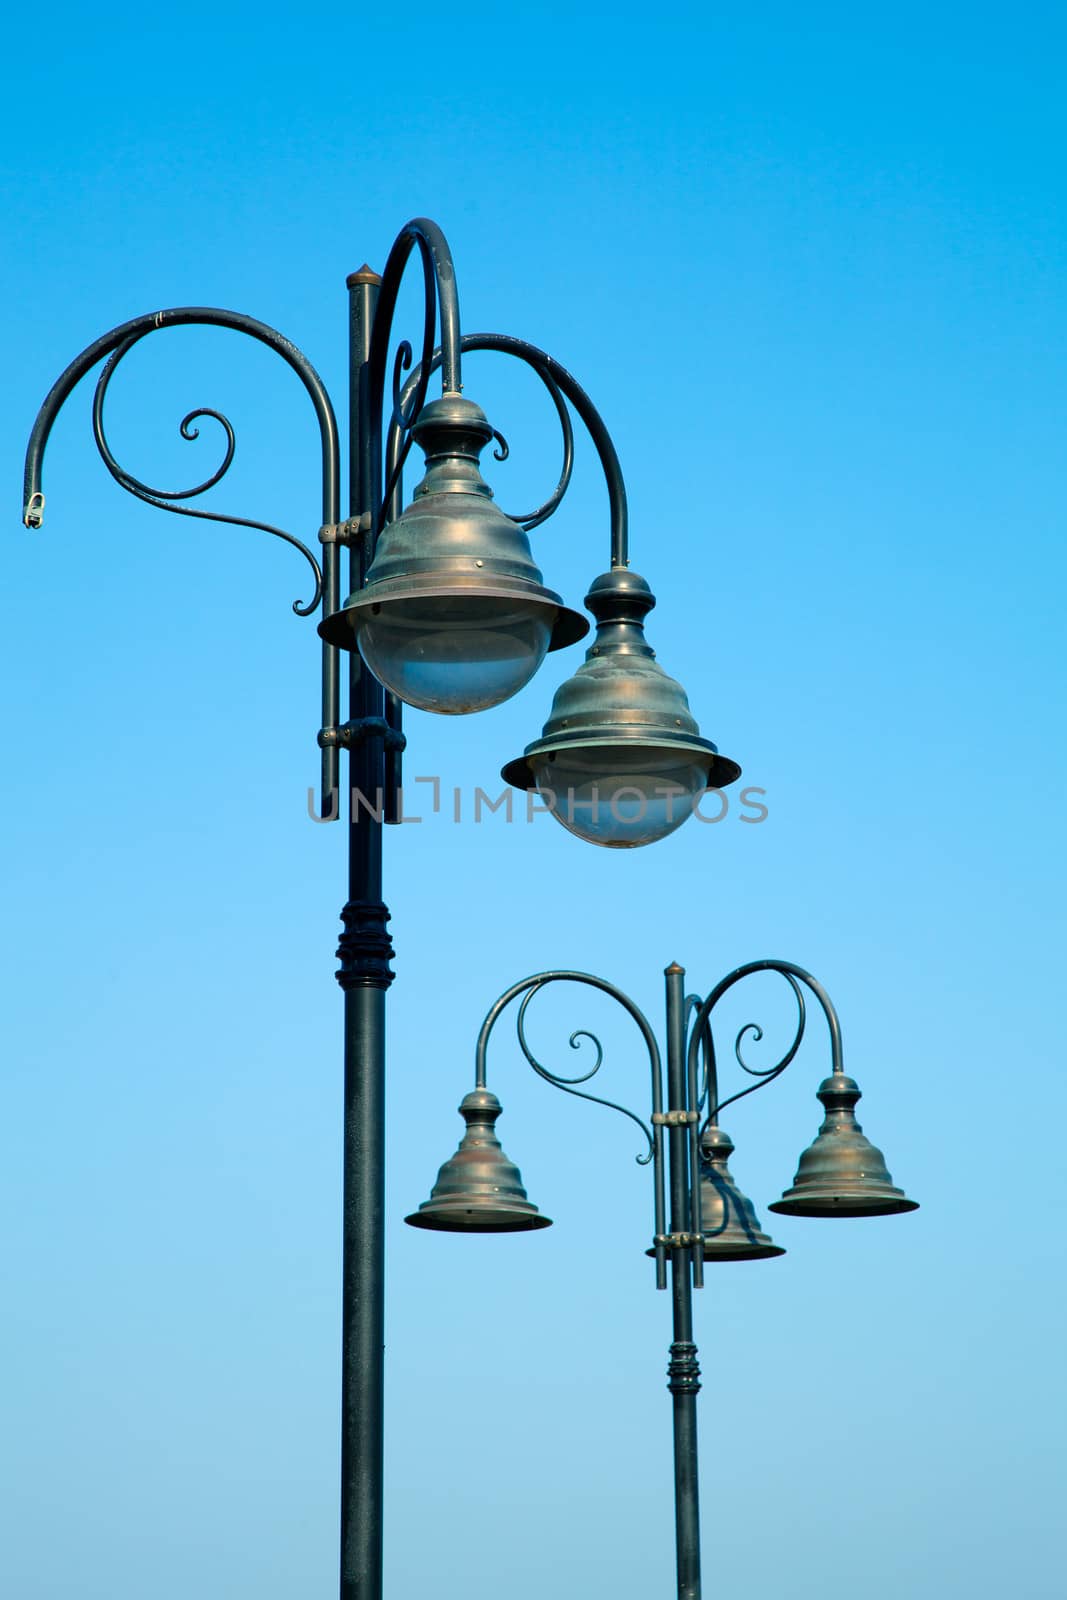 old street-lamp on blue sky by motorolka